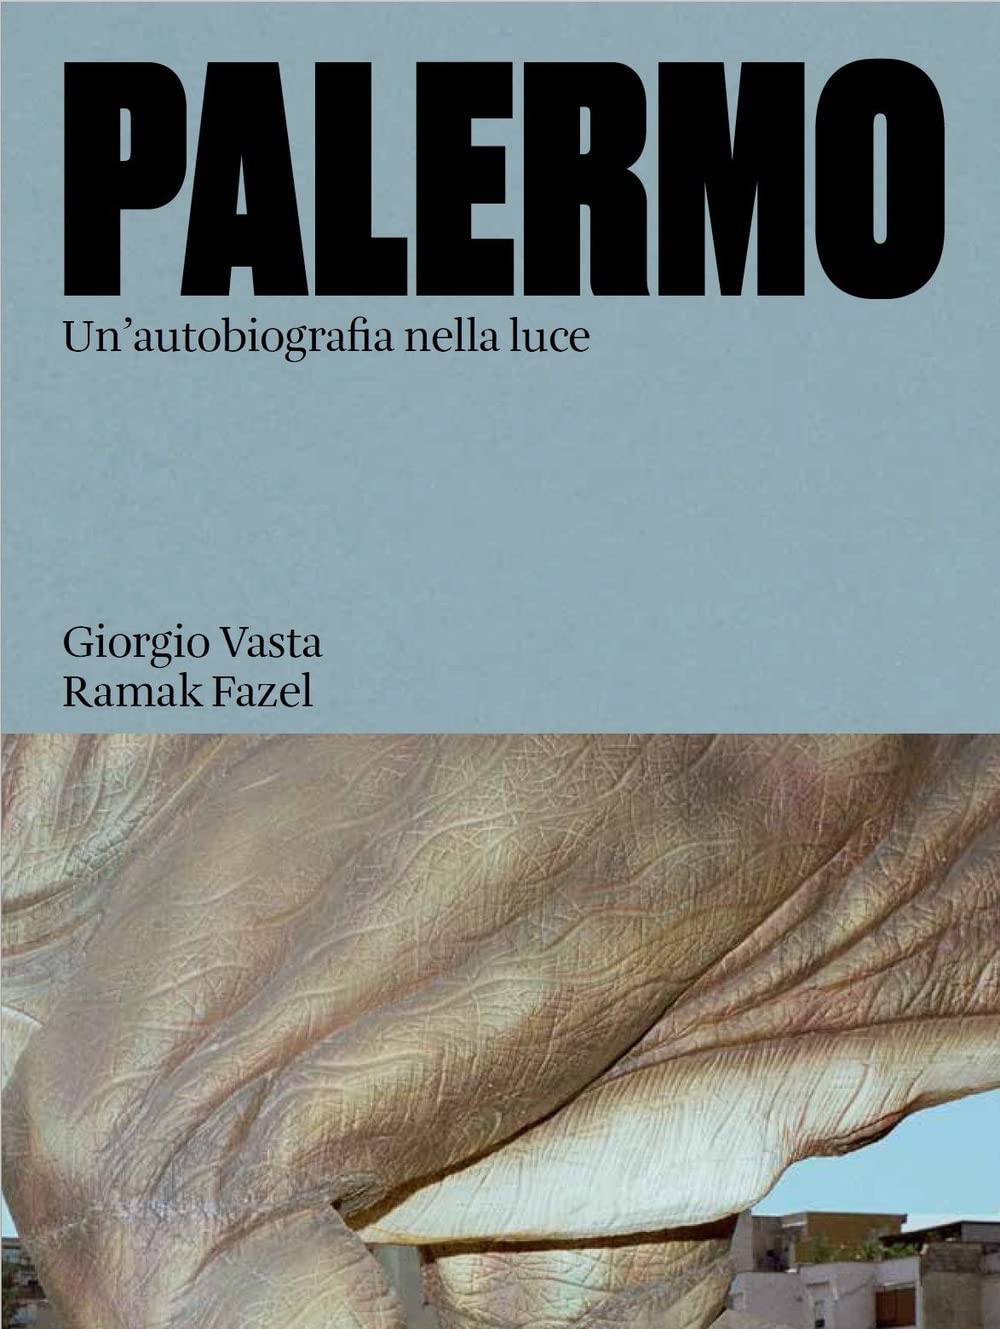 Giorgio Vasta & Ramak Fazel – Palermo. Un'autobiografia nella luce (Humboldt Books, Milano 2022)